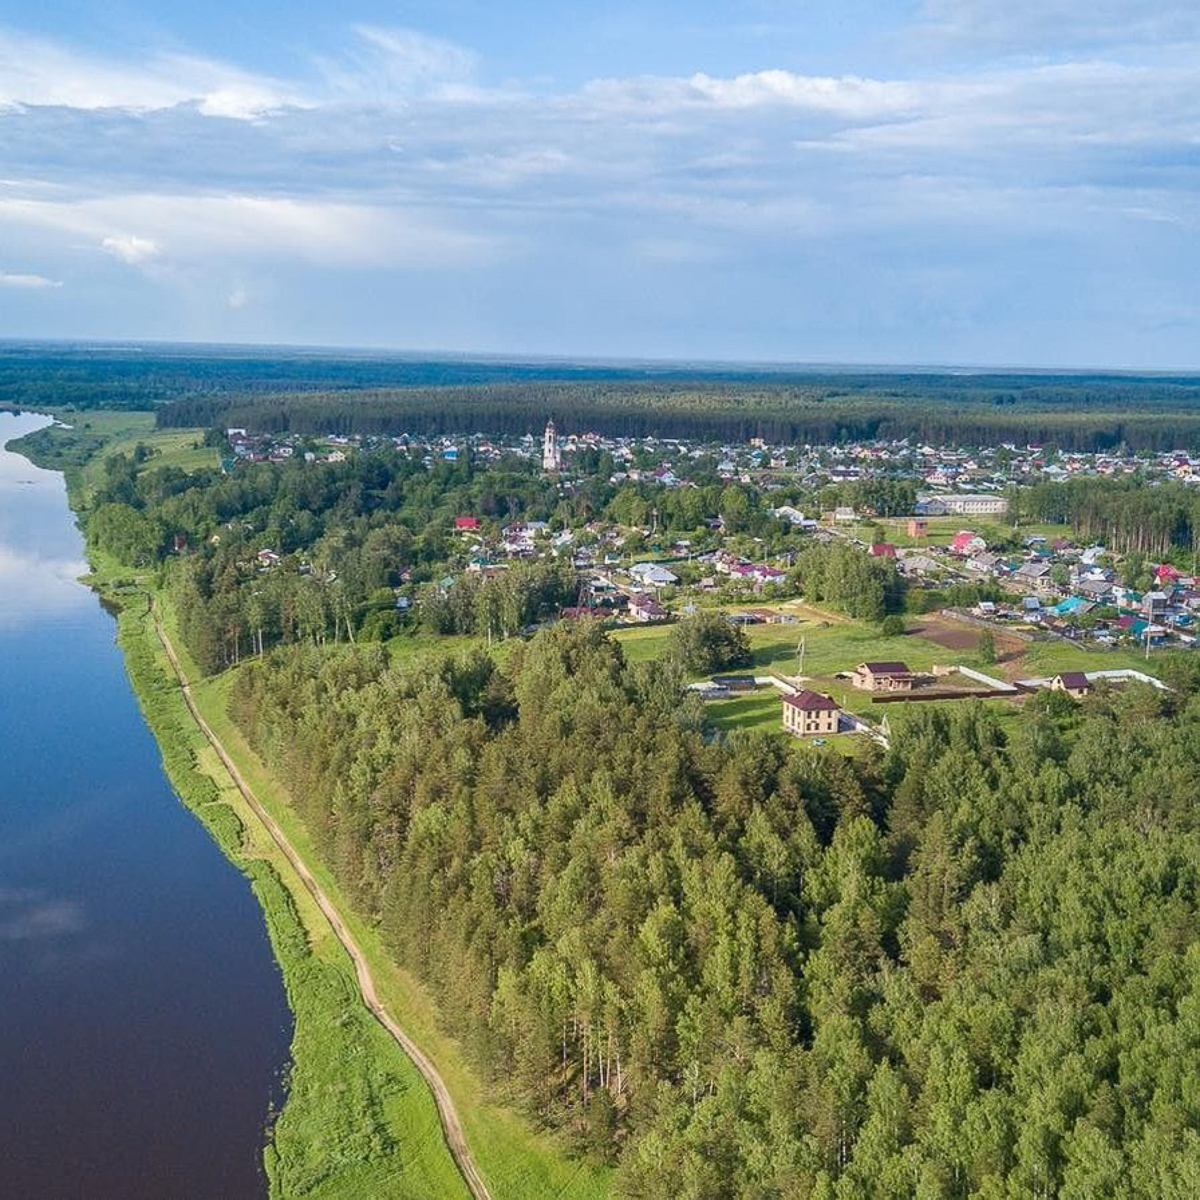 Во Владимирской области выбрали самые красивые деревни-2020. Какой же населенный пункт получил гран-при 150 000 рублей и почетный титул?